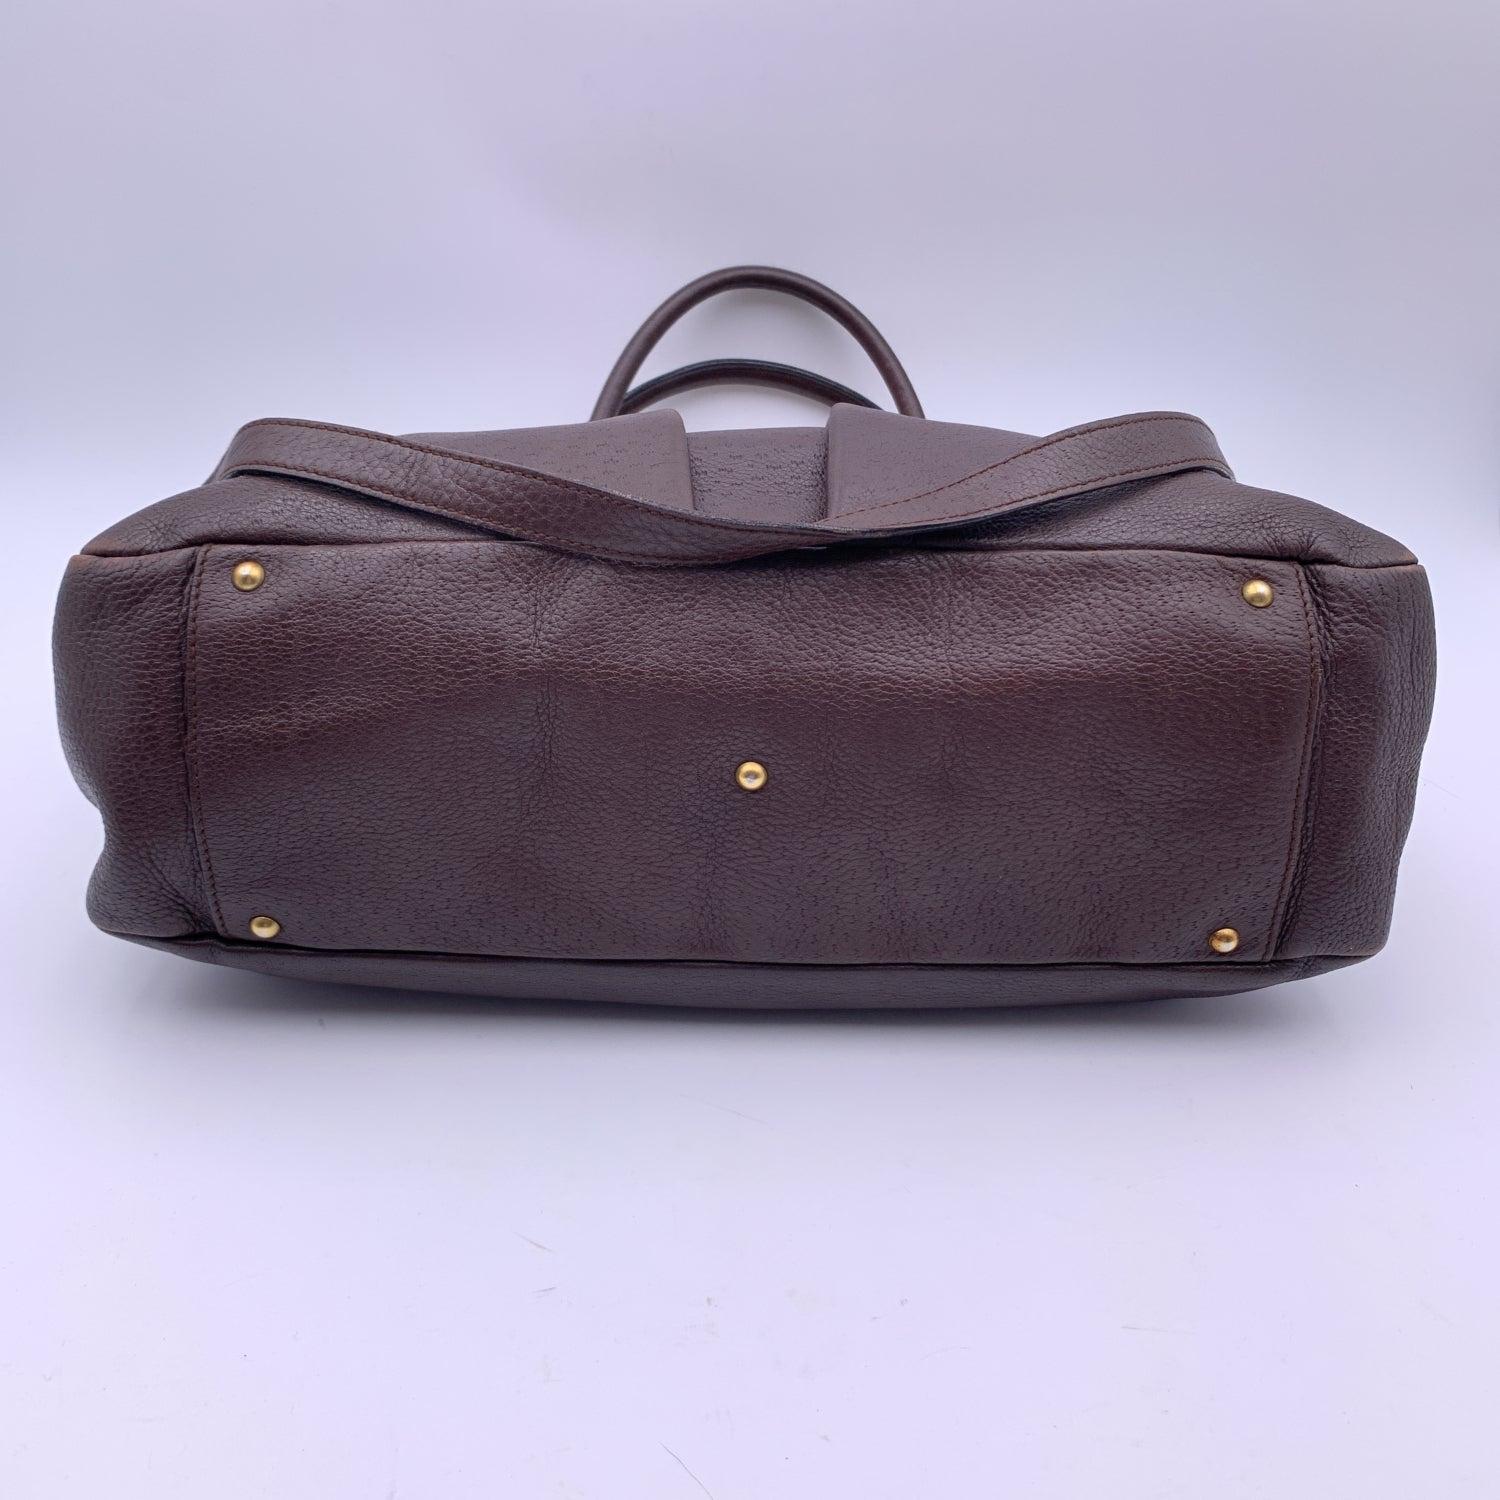 Salvatore Ferragamo Dark Brown Leather Gancini Tote Bag with Strap 3